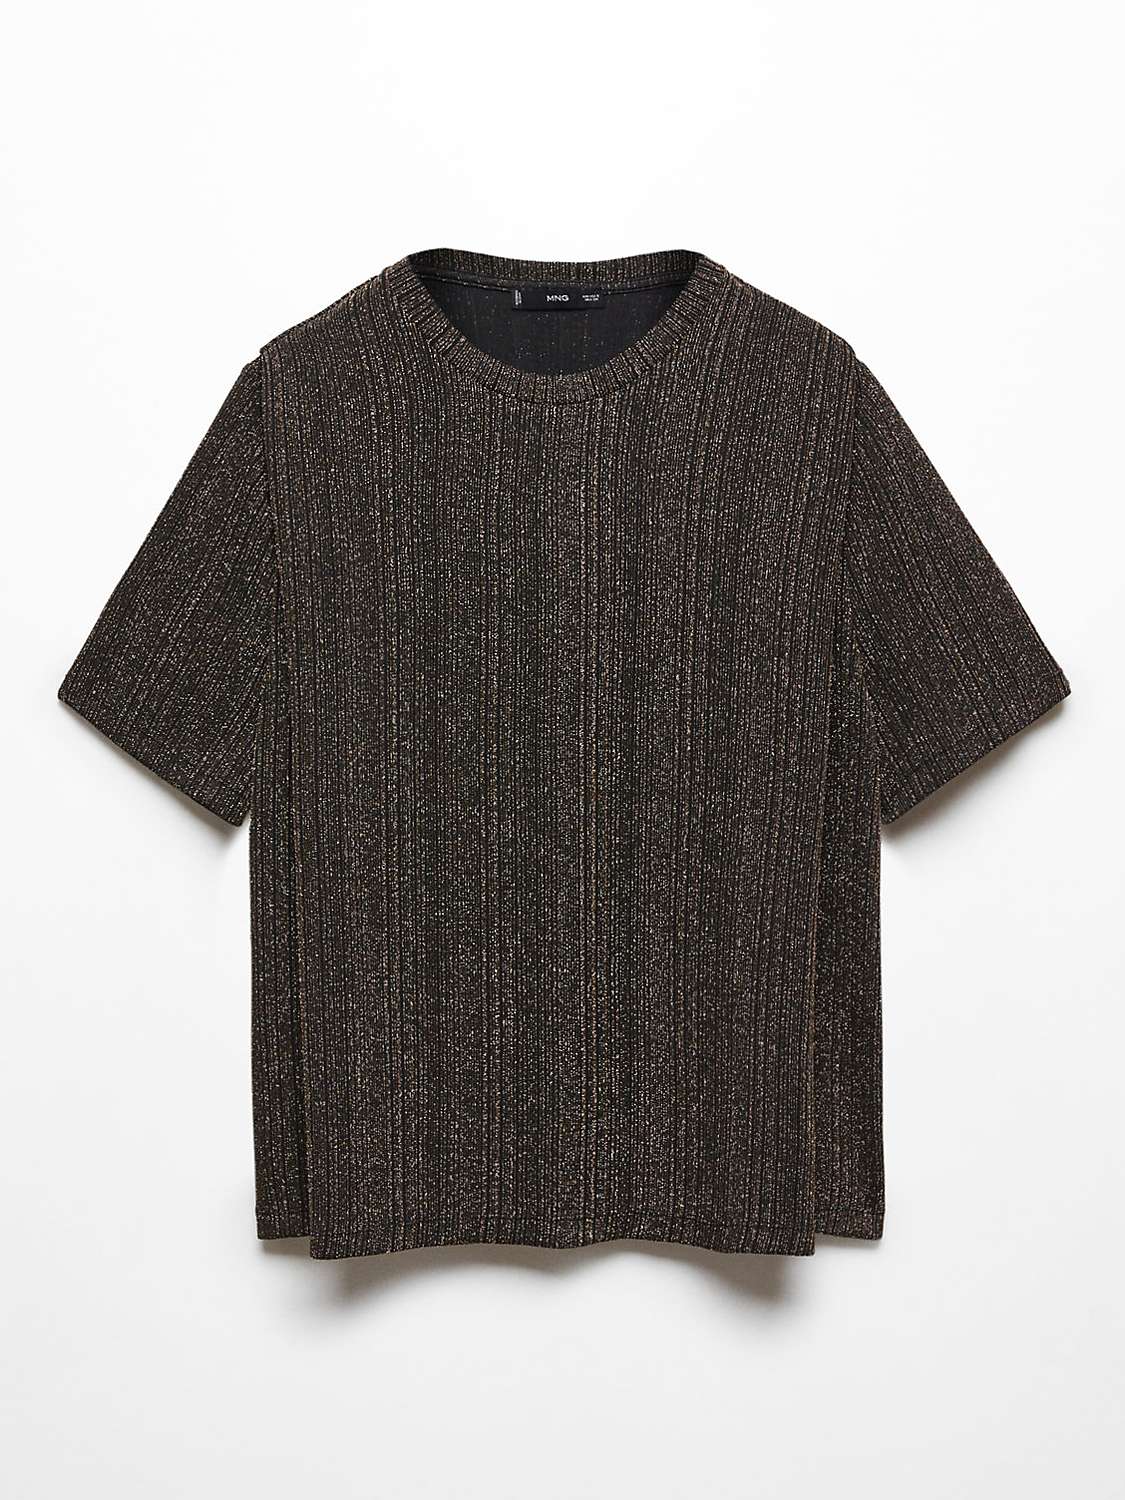 Buy Mango Xluri Metallic Stripe T-Shirt, Black/Gold Online at johnlewis.com